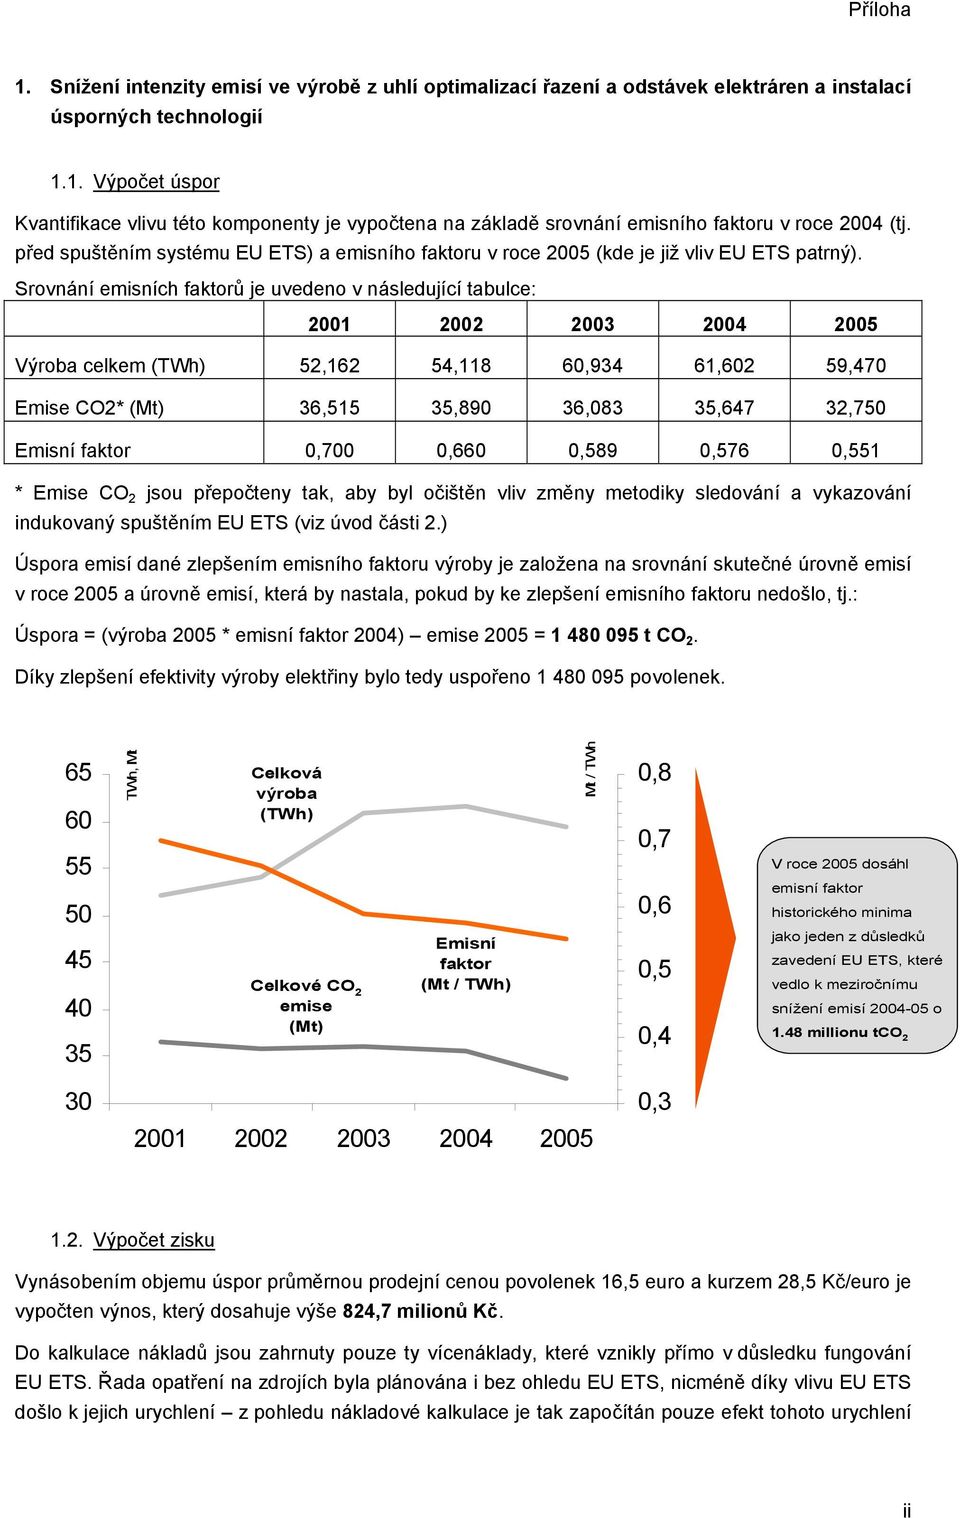 Srovnání emisních faktorů je uvedeno v následující tabulce: 2001 2002 2003 2004 2005 Výroba celkem (TWh) 52,162 54,118 60,934 61,602 59,470 Emise CO2* (Mt) 36,515 35,890 36,083 35,647 32,750 Emisní